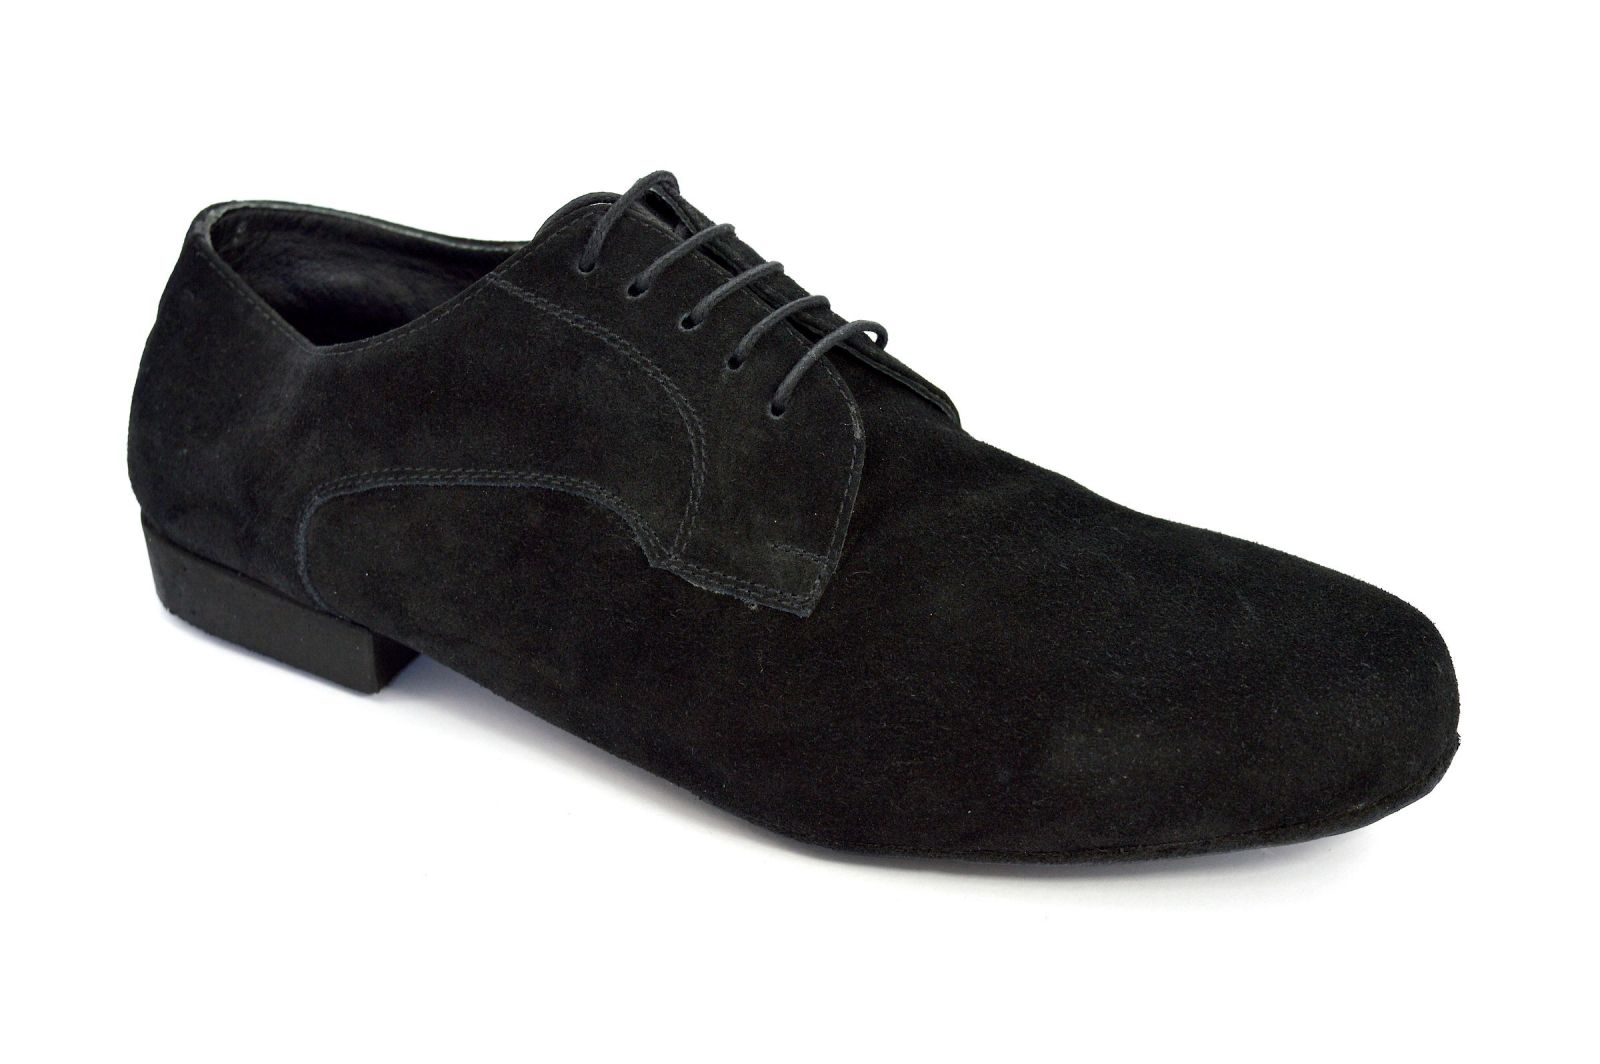 Ανδρικό παπούτσι χορού αργεντίνικου τάνγκο από μαύρο σουέτ δέρμα